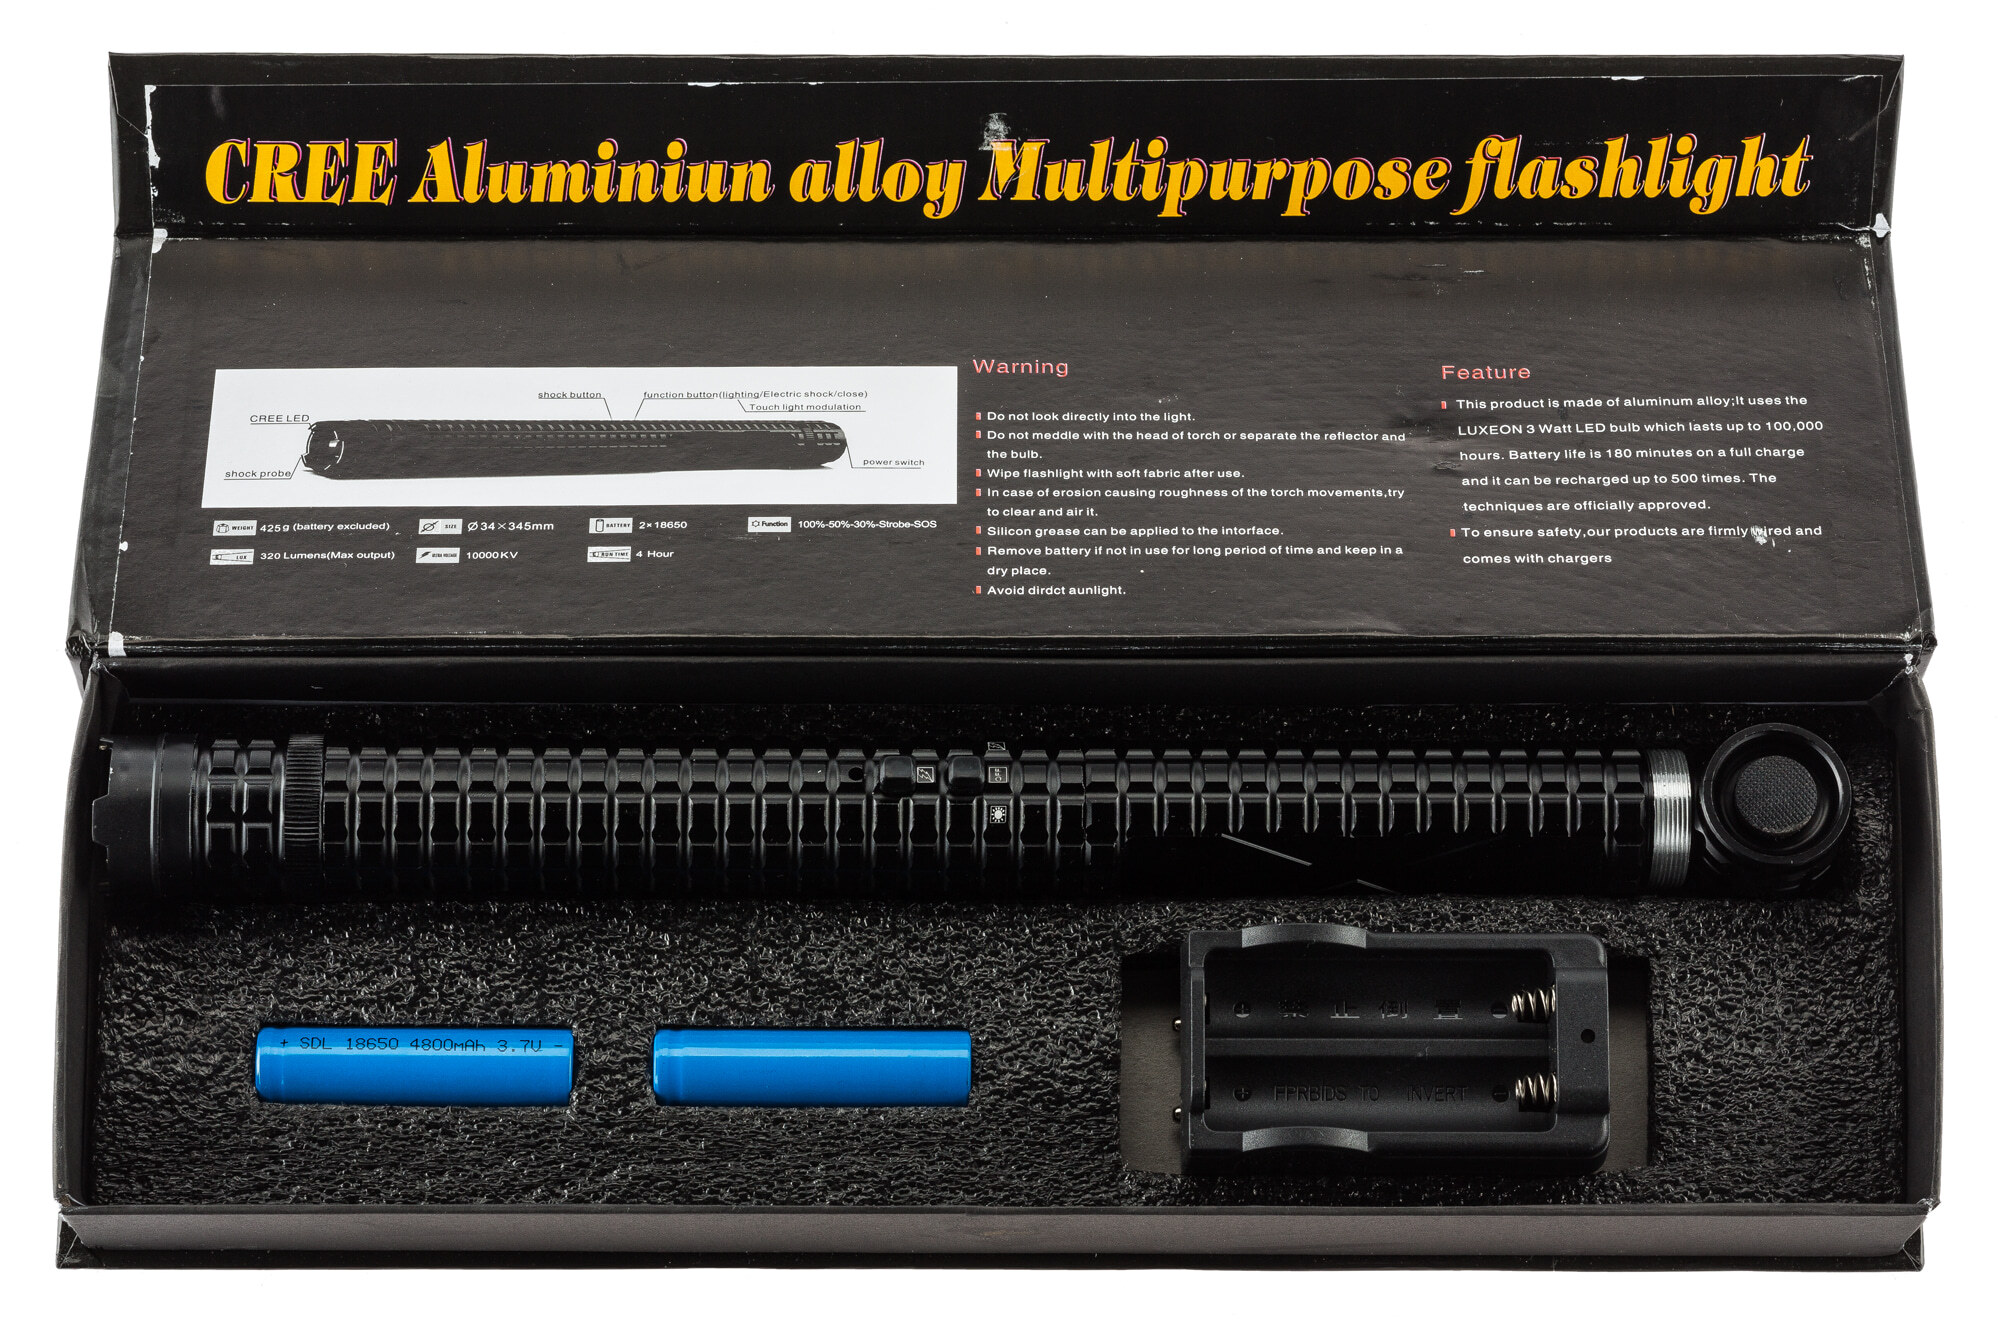 Matraque Shocker EXTREME X8 - 10 000 000 volts